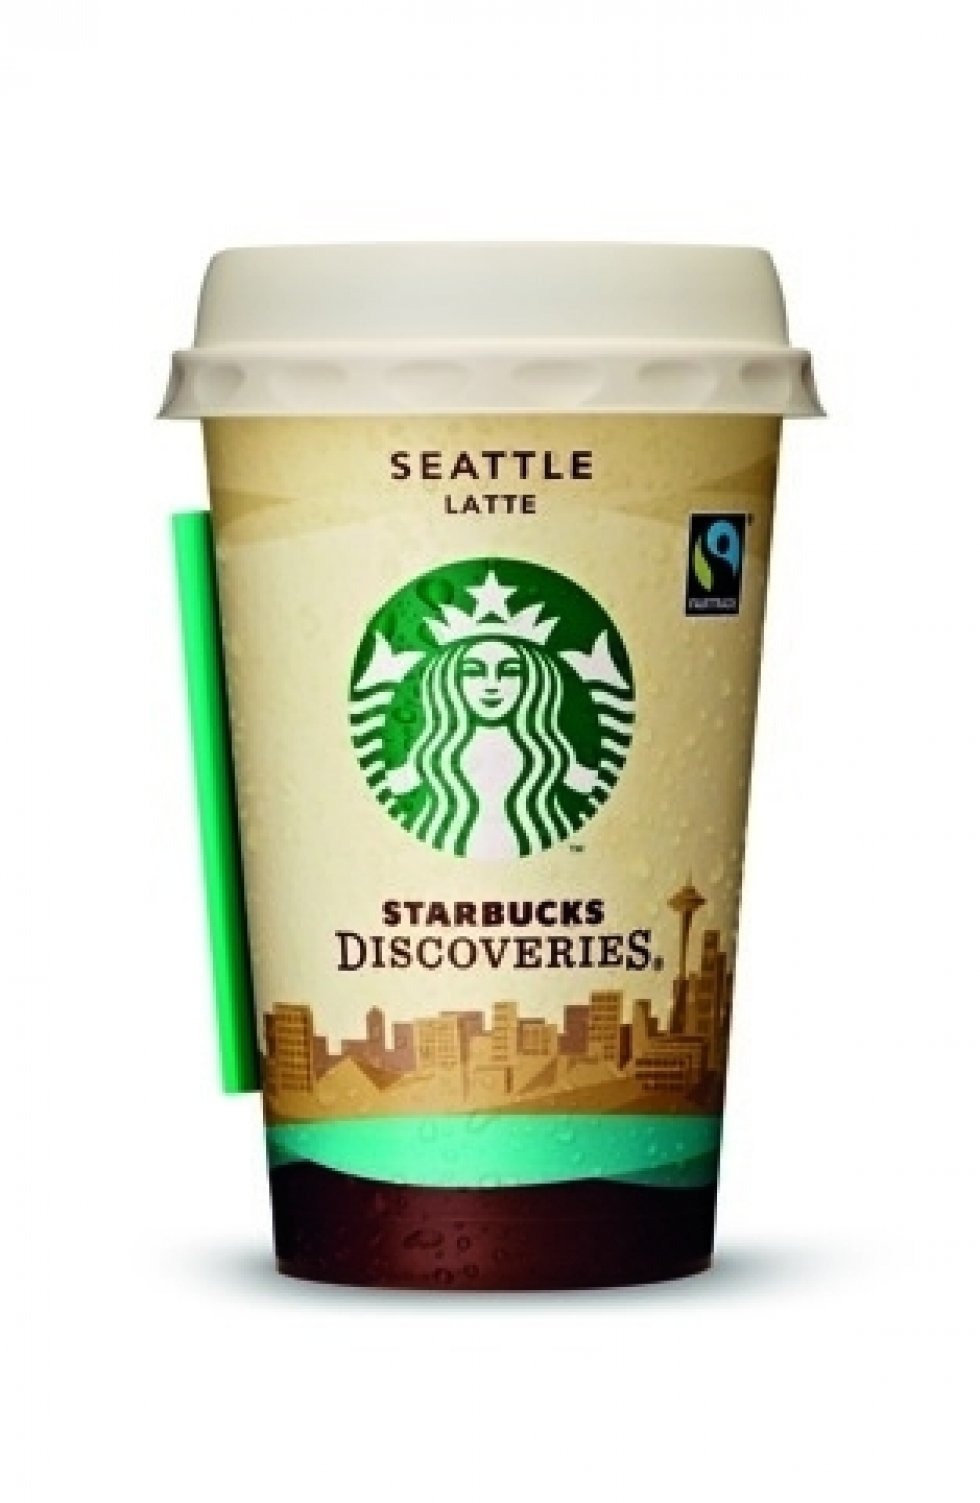 Seattle Latte aka. min favorit: Starbucks åbnede den første butik i 1971, og denne blanding af rig espresso og cremet mælk er inspireret af den originale Starbucks® Caffé Latte. - Starbucks i nye klæ'r